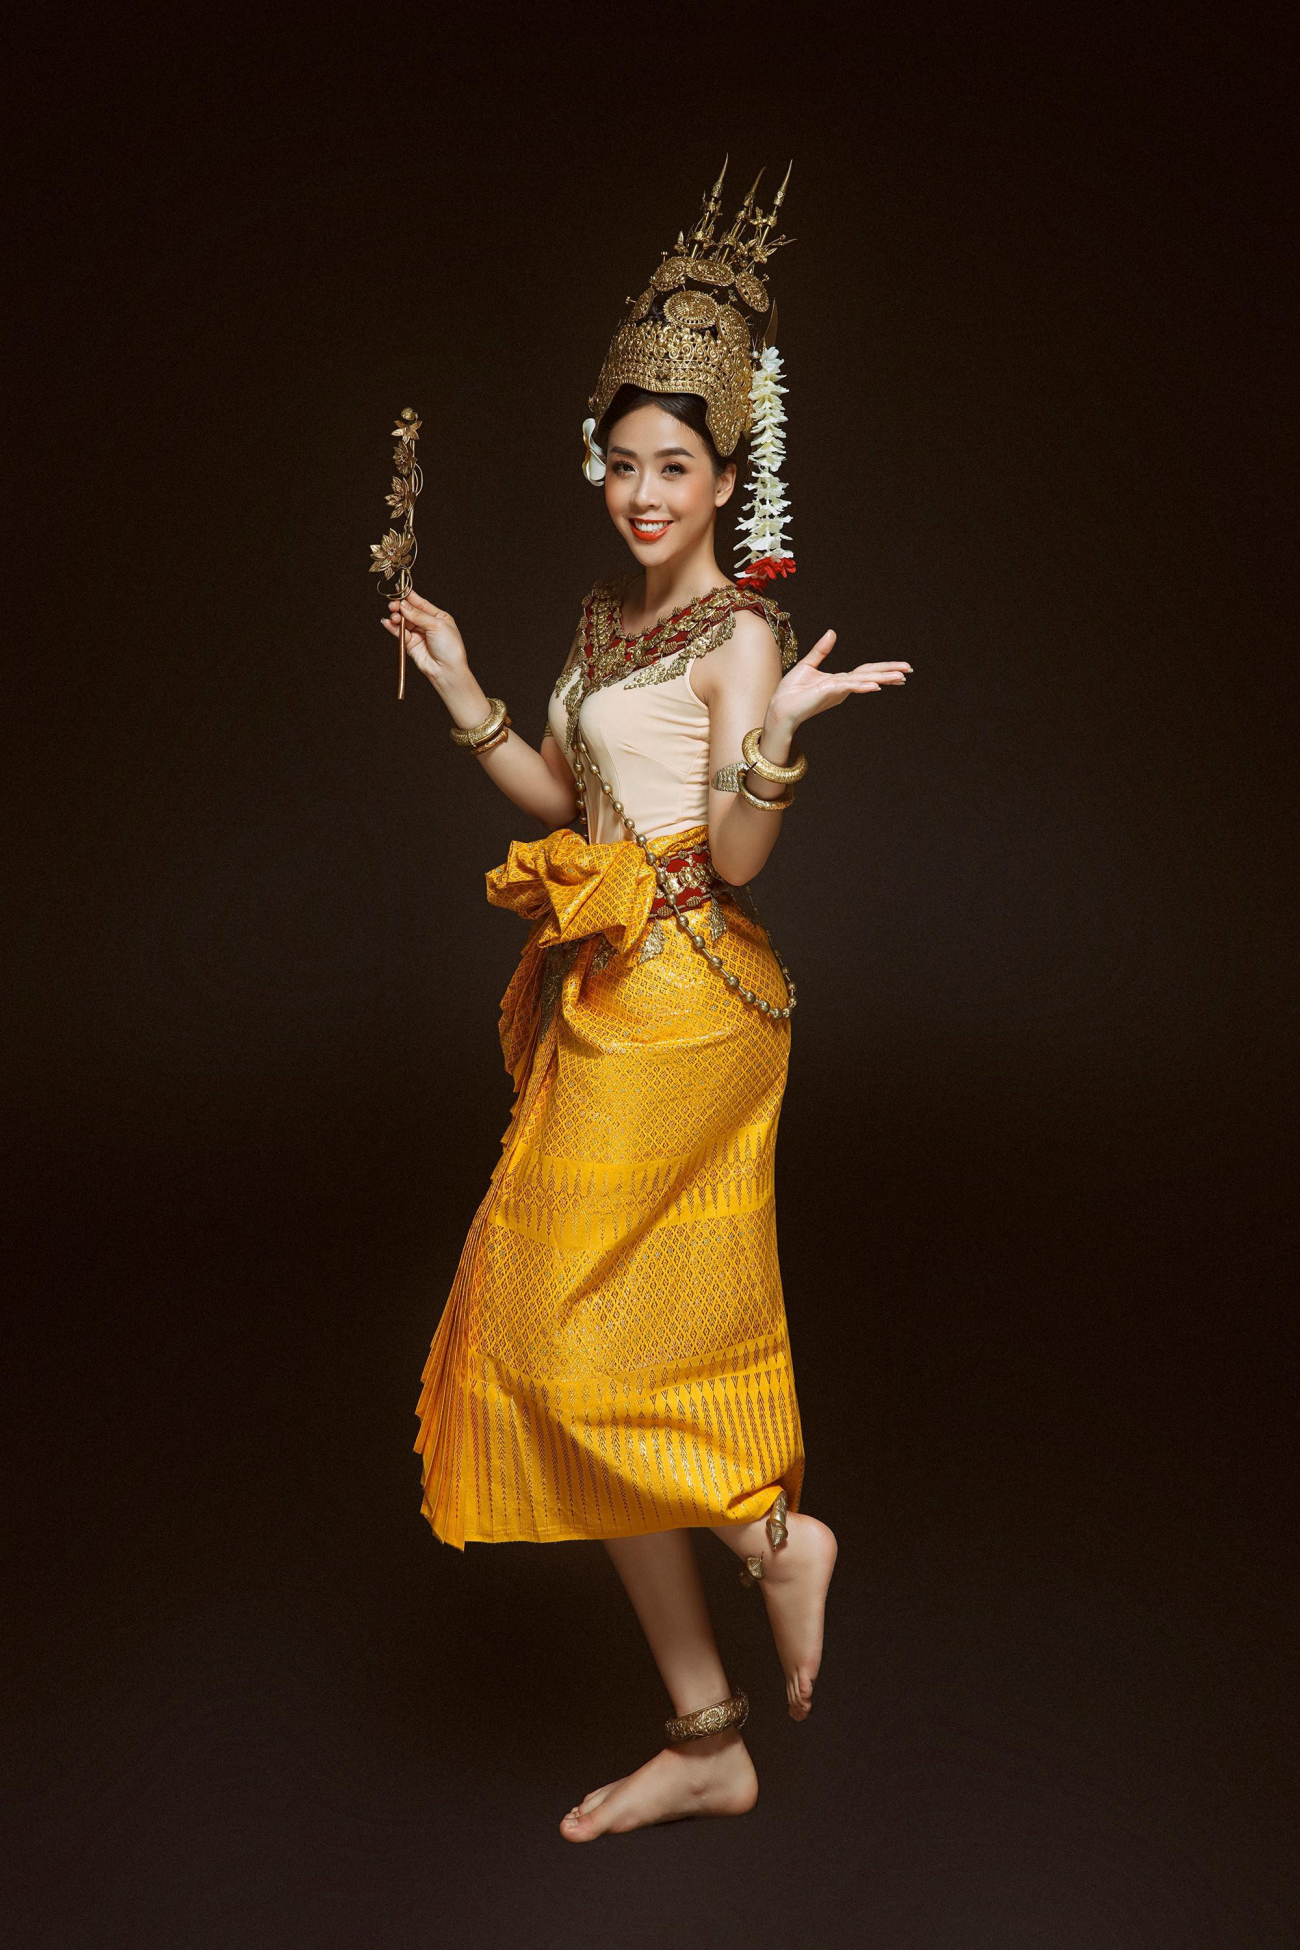 Hoa khôi sinh viên tp cần thơ đẹp dịu dàng với trang phục khmer - 3